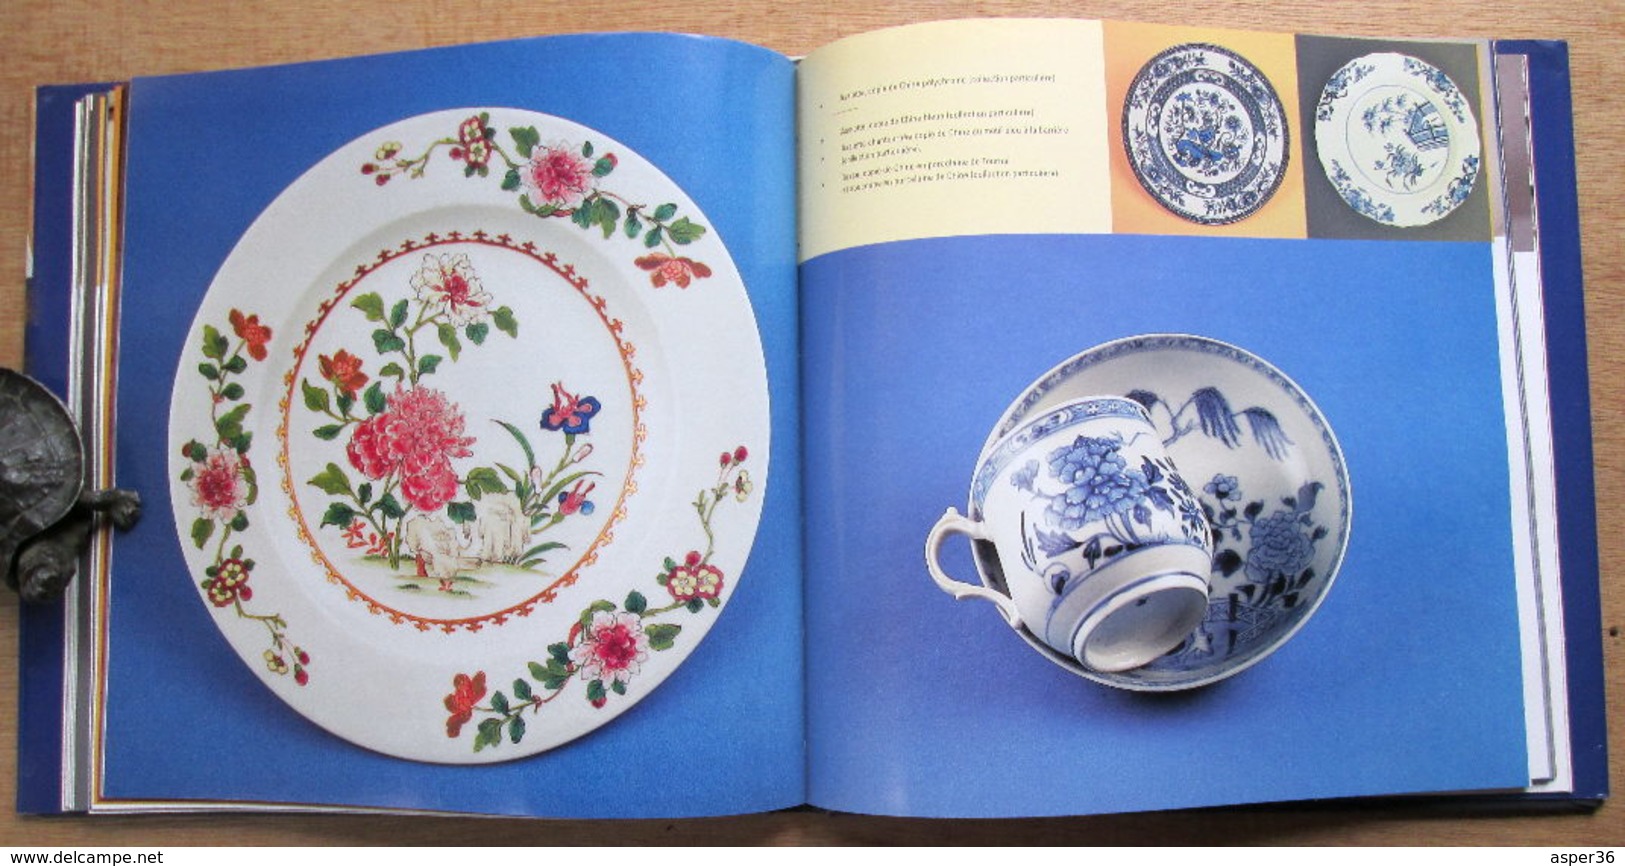 "La Porcelaine de Tournai" Histoire d'une Manufacture (1750 - 1891) Jean Lemaire 1999